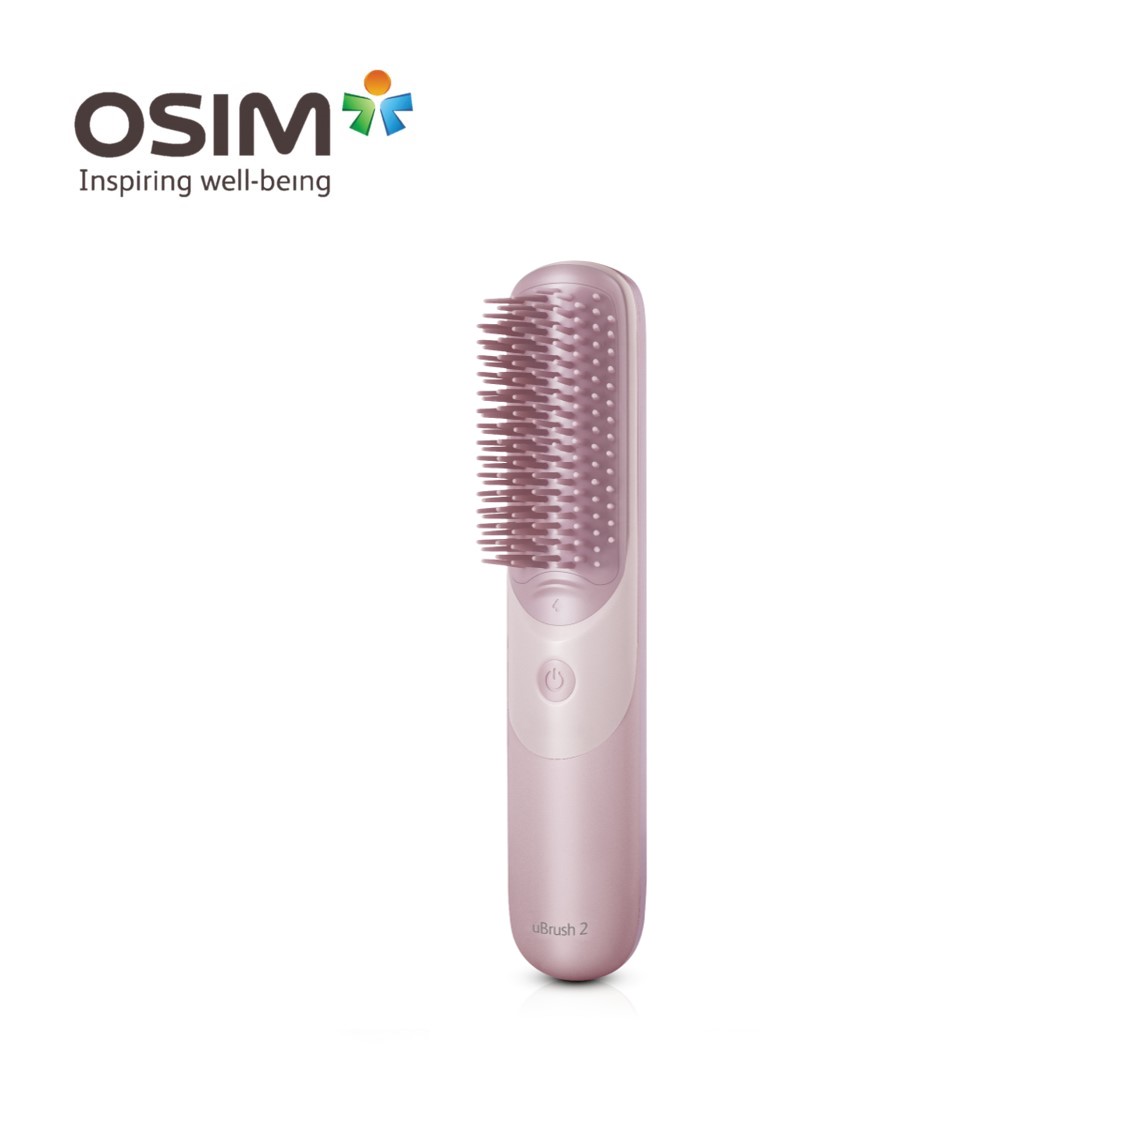 OSIM uBrush 2 (Purple) Handheld Massager